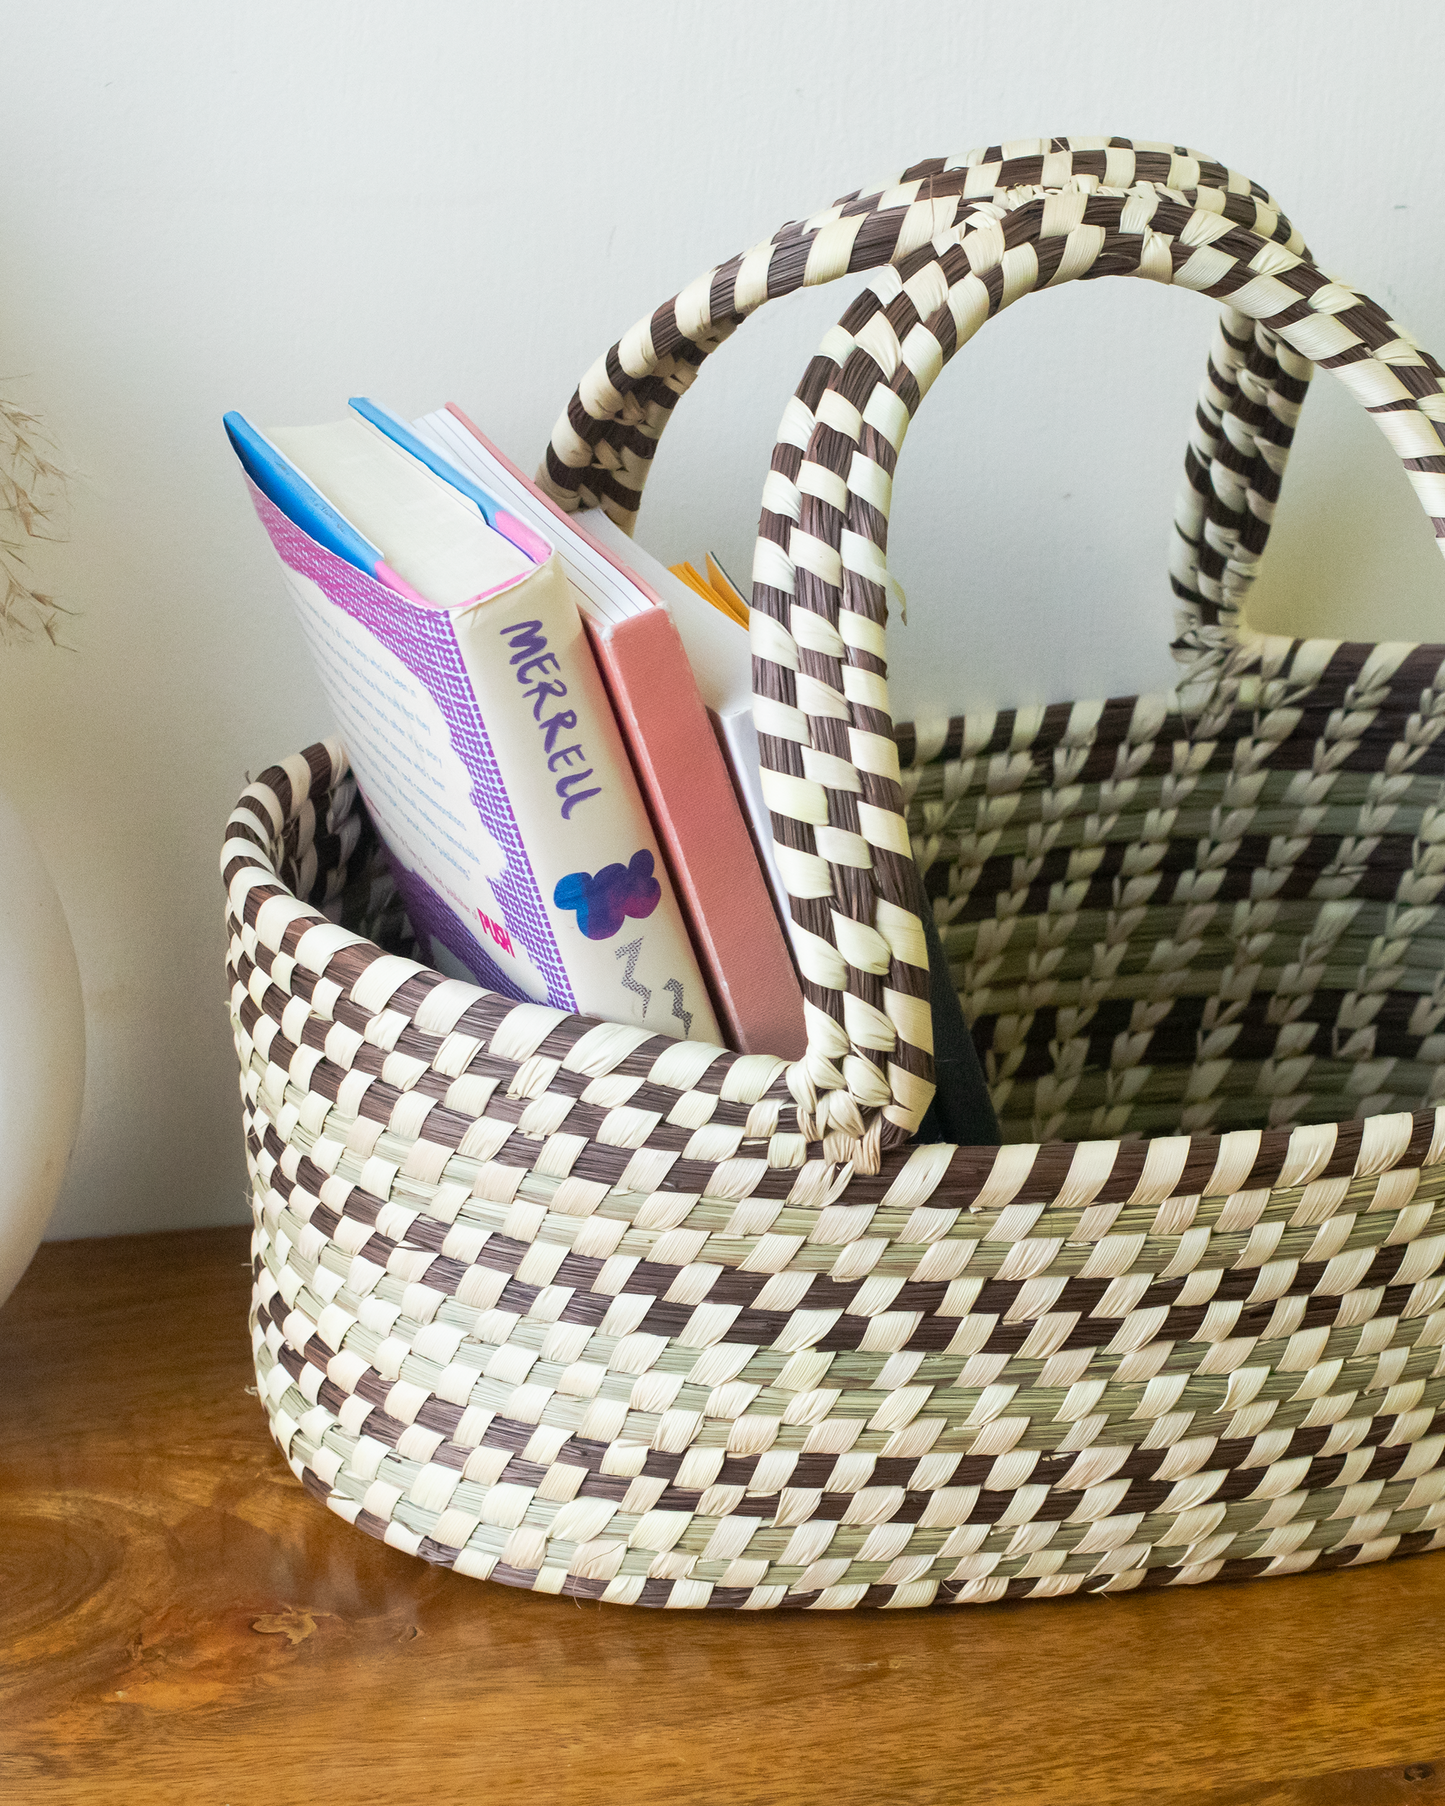 Natural handmade hamper basket